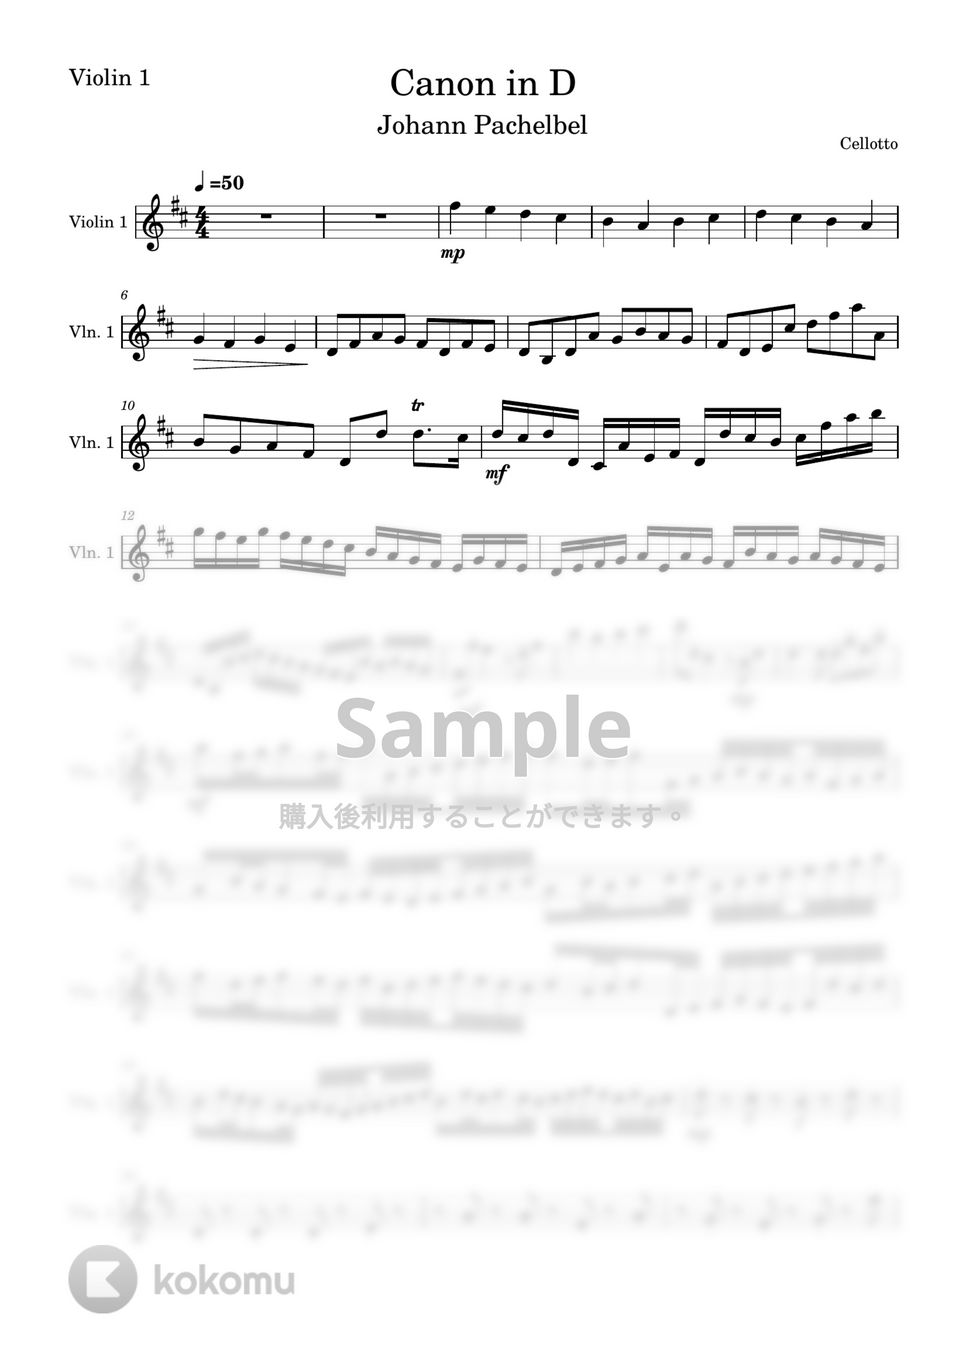 パッハルベル - カノン (ヴァイオリン1-弦楽四重奏) by Cellotto